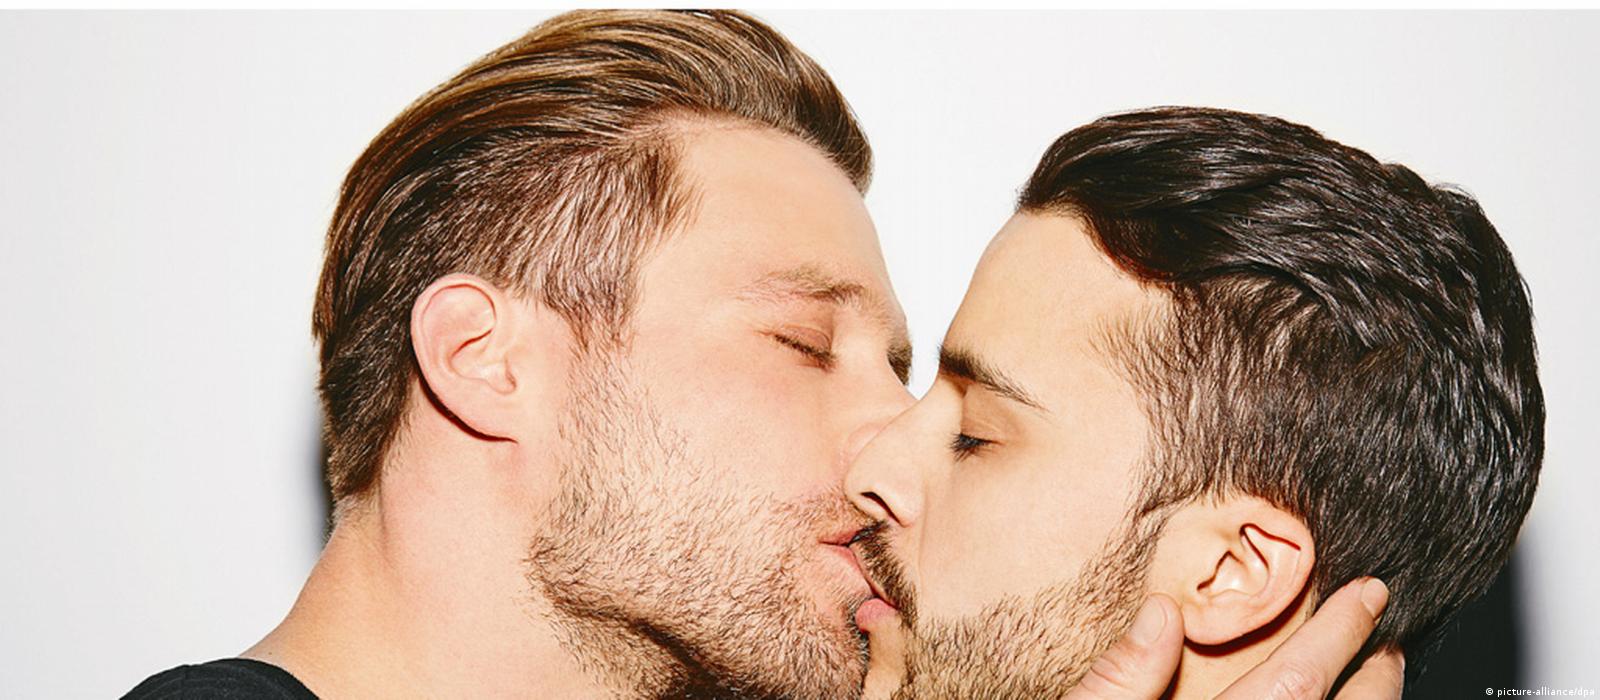 целовать парня гей фото 69